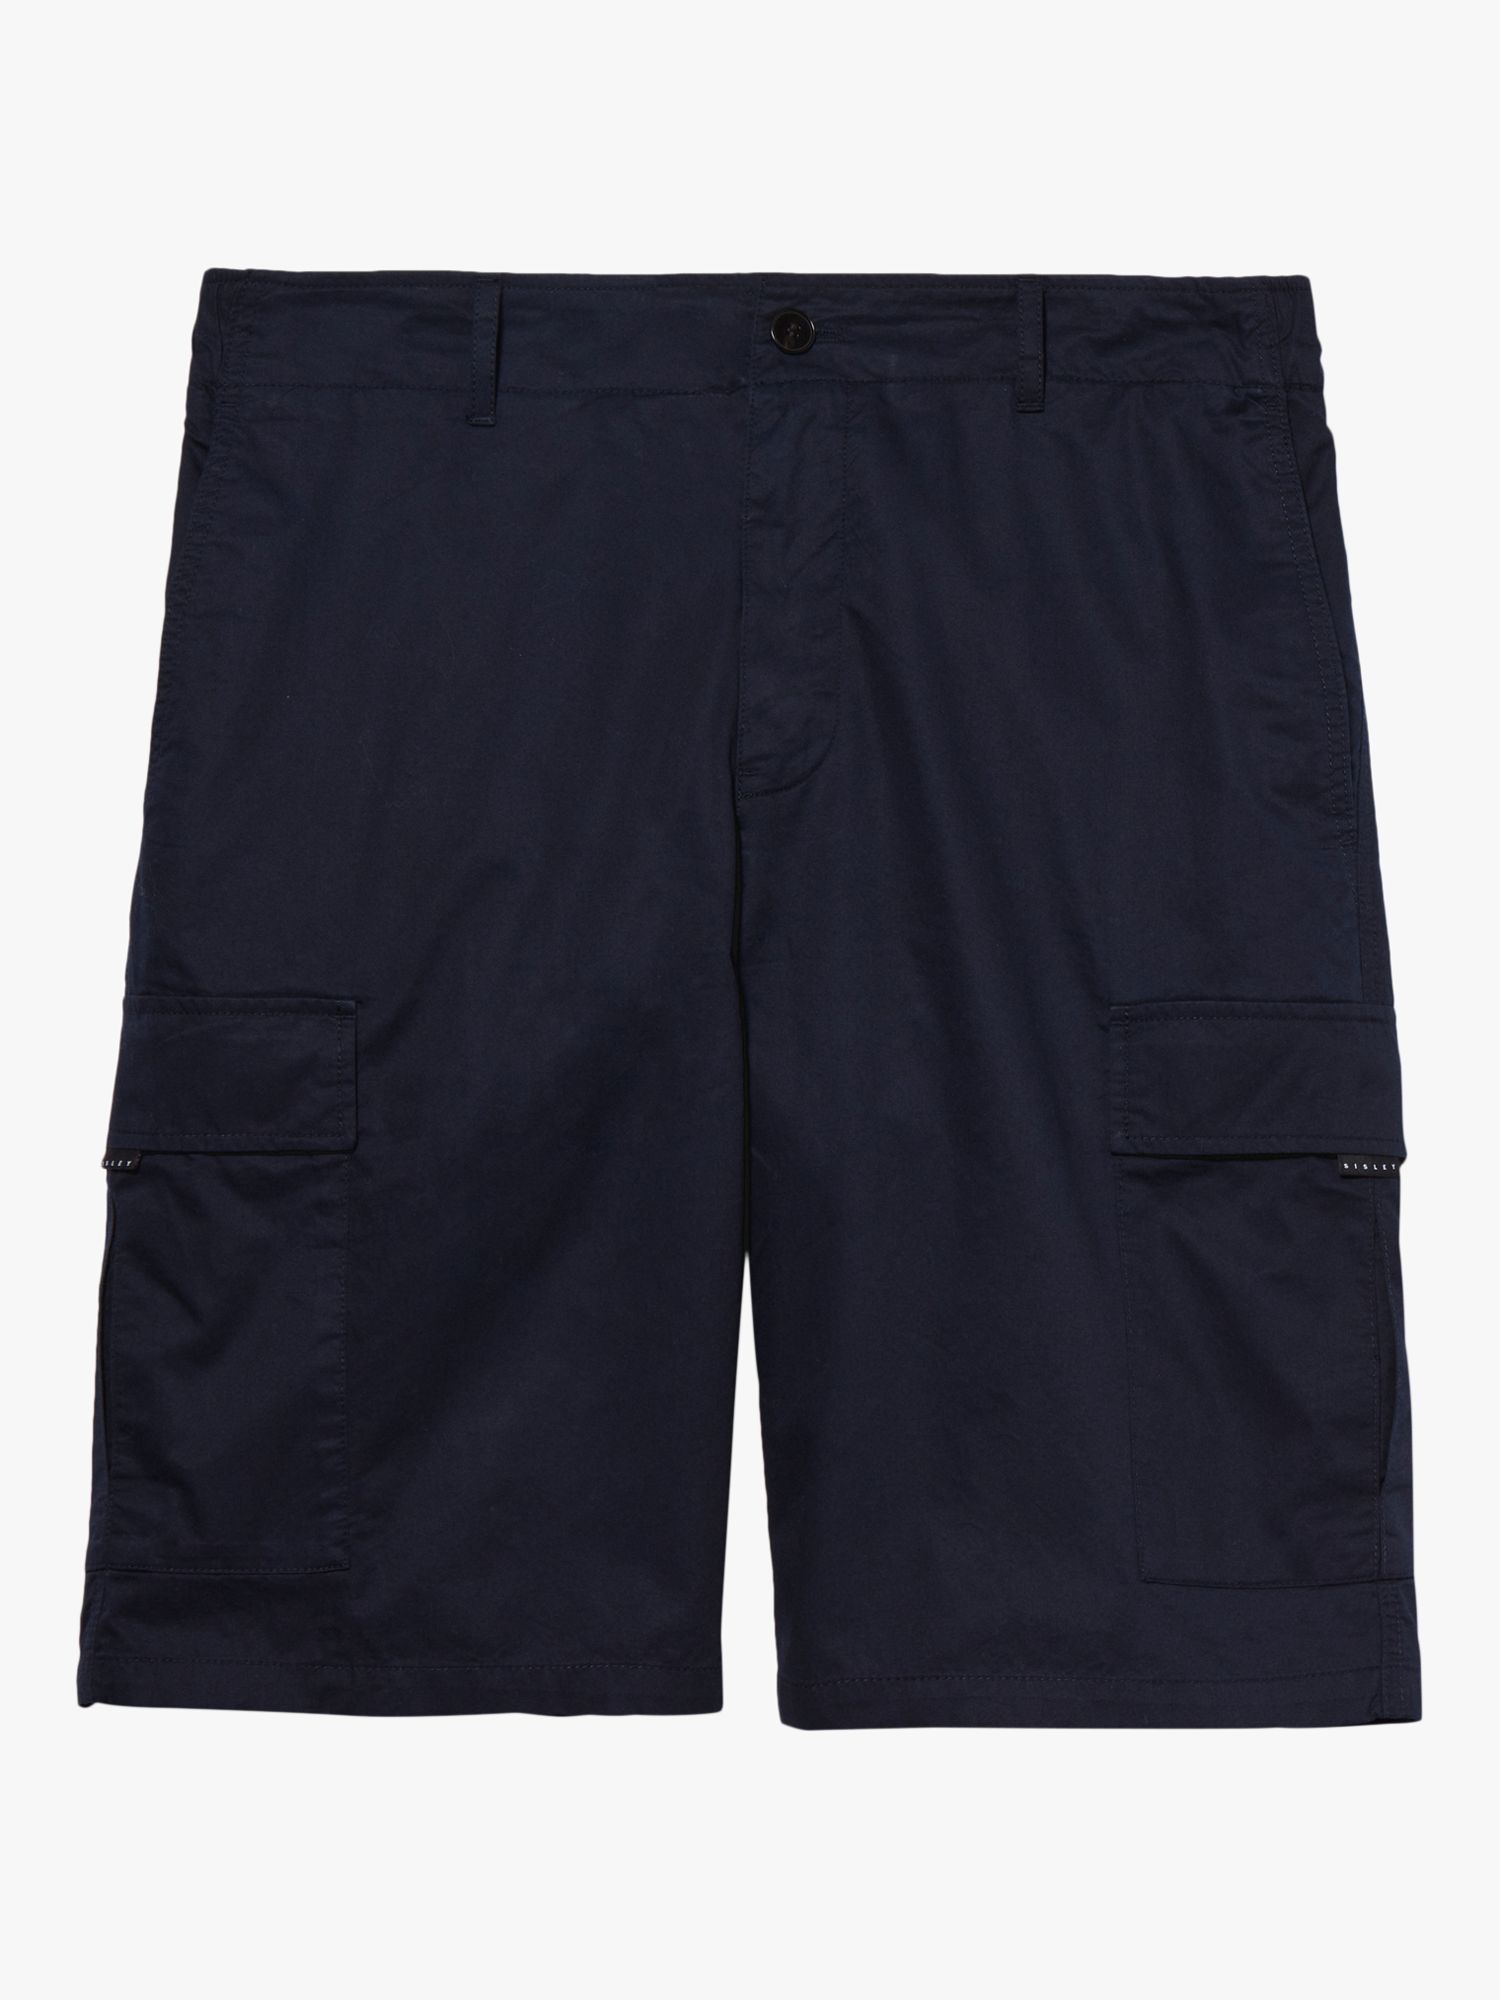 SISLEY Cargo Bermuda Shorts, Navy, 30